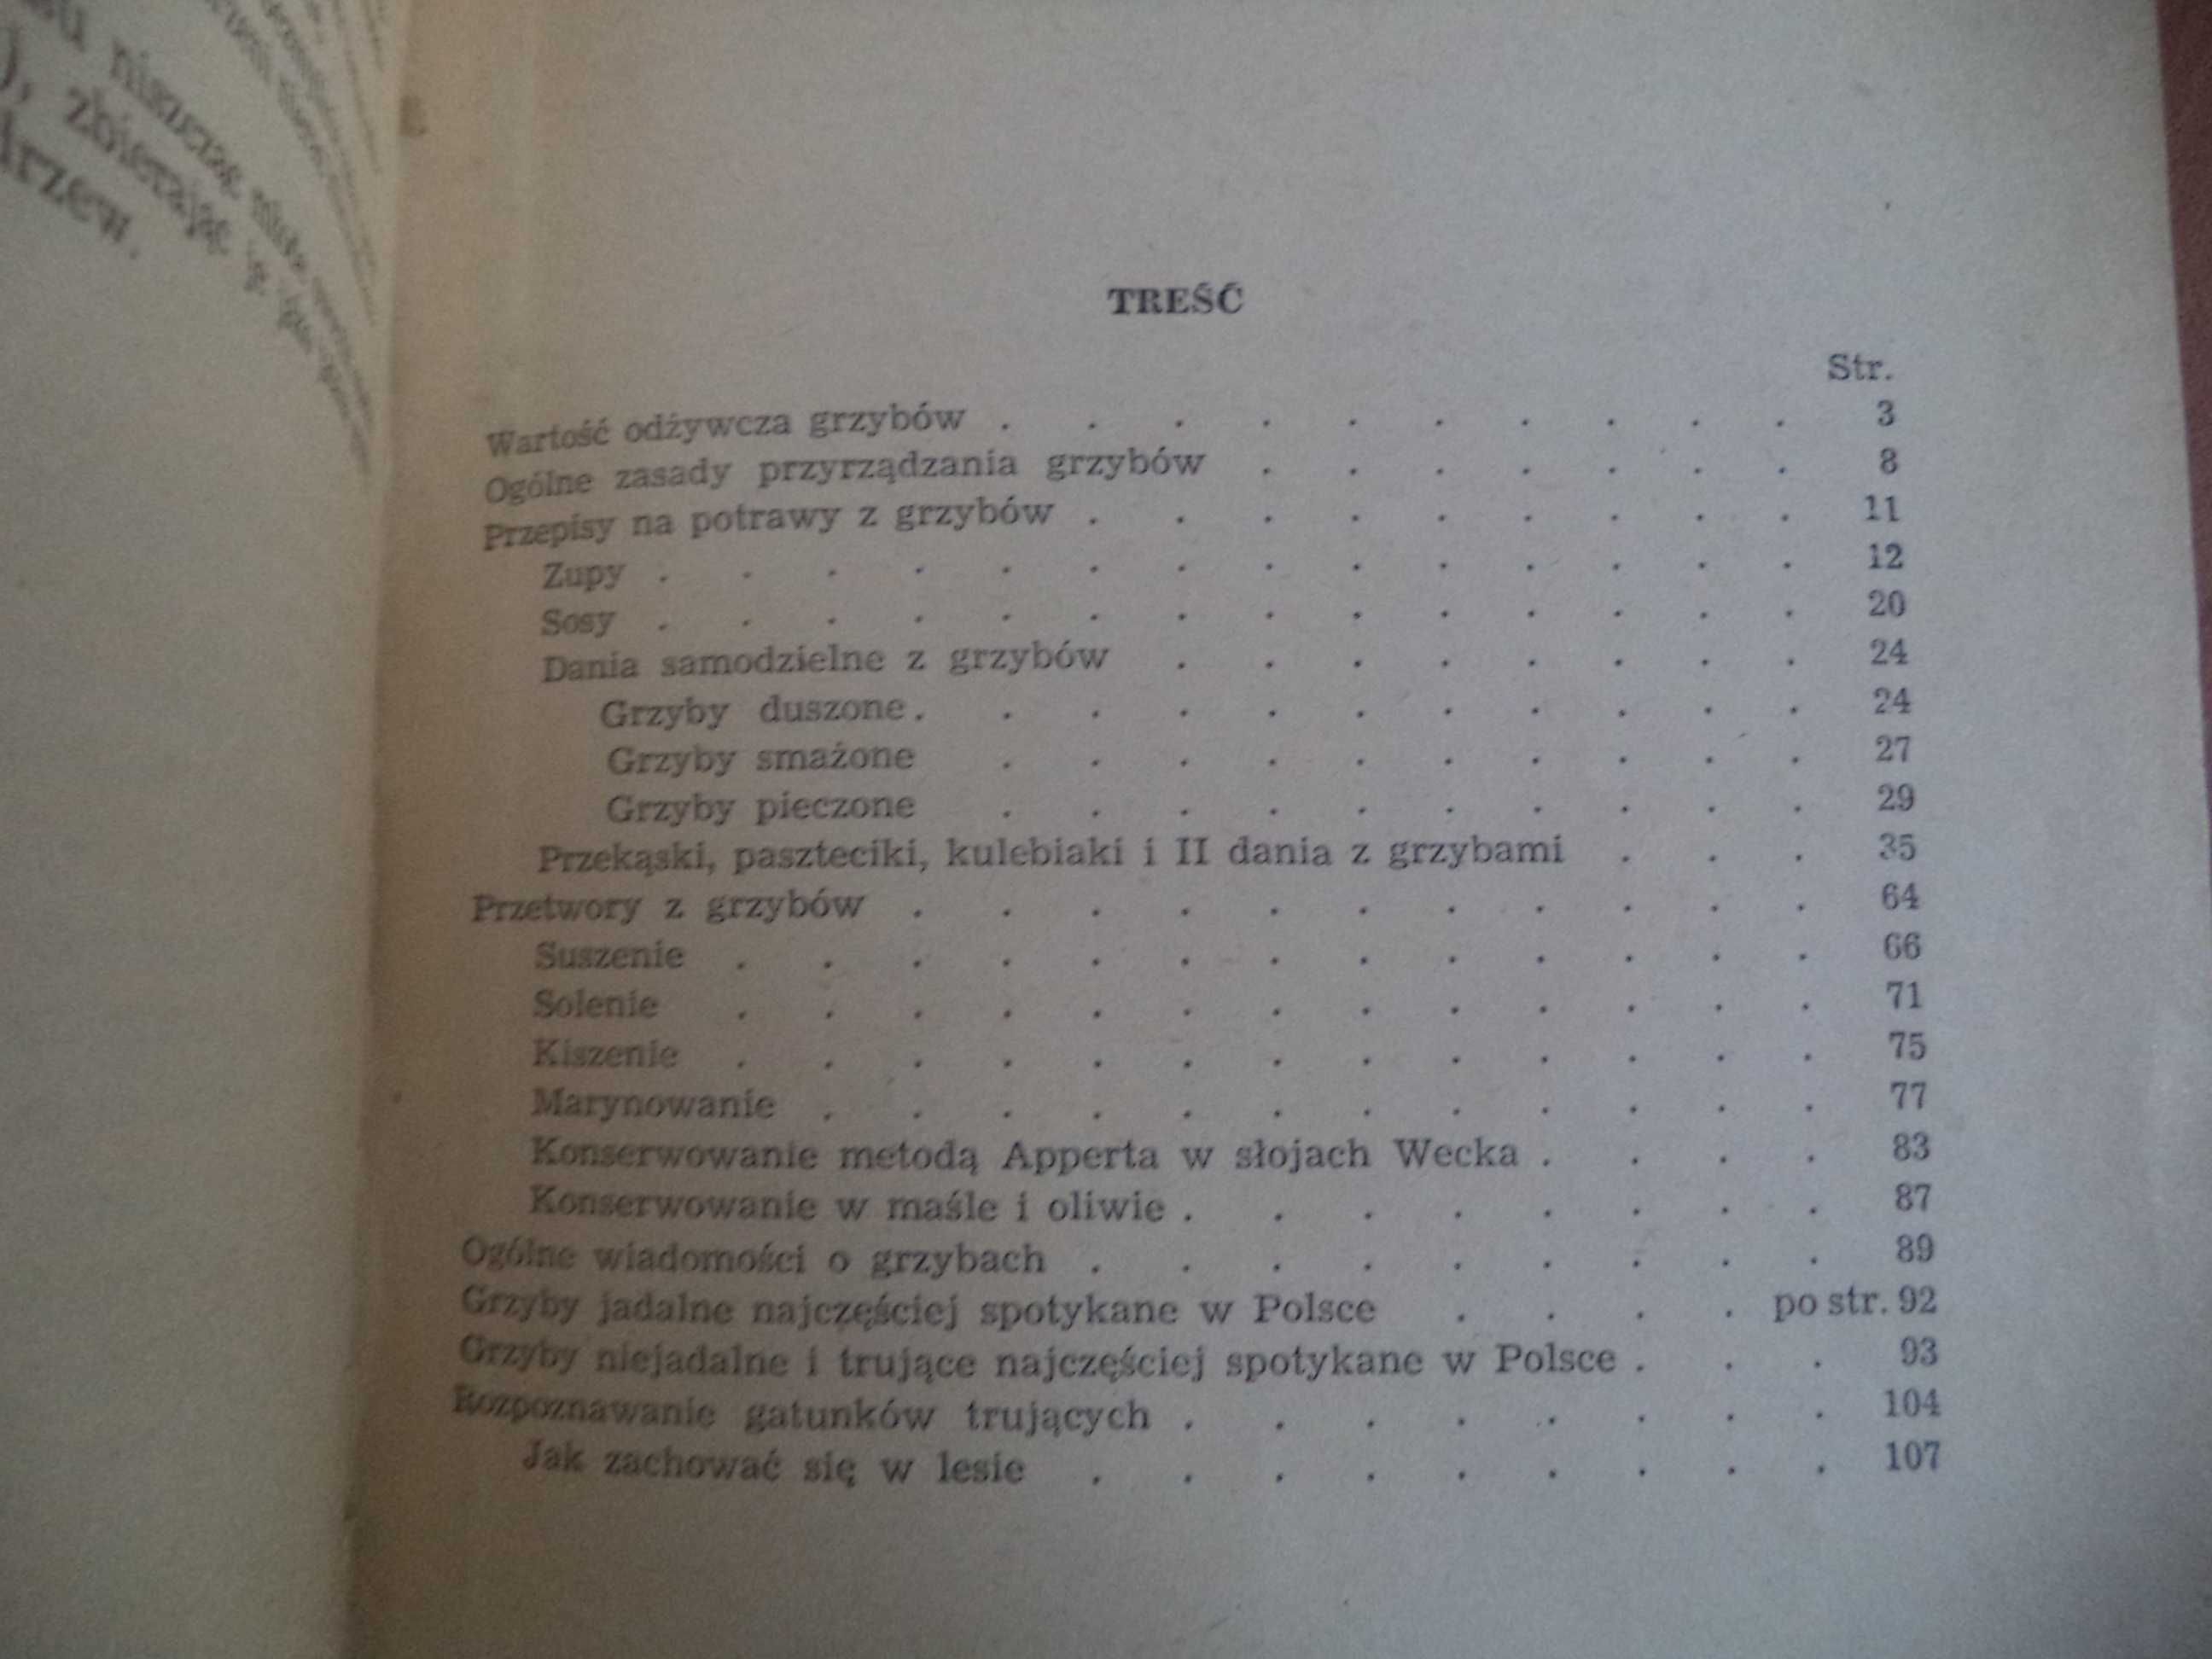 Grzyby i potrawy z grzybów I. Guirard 1956